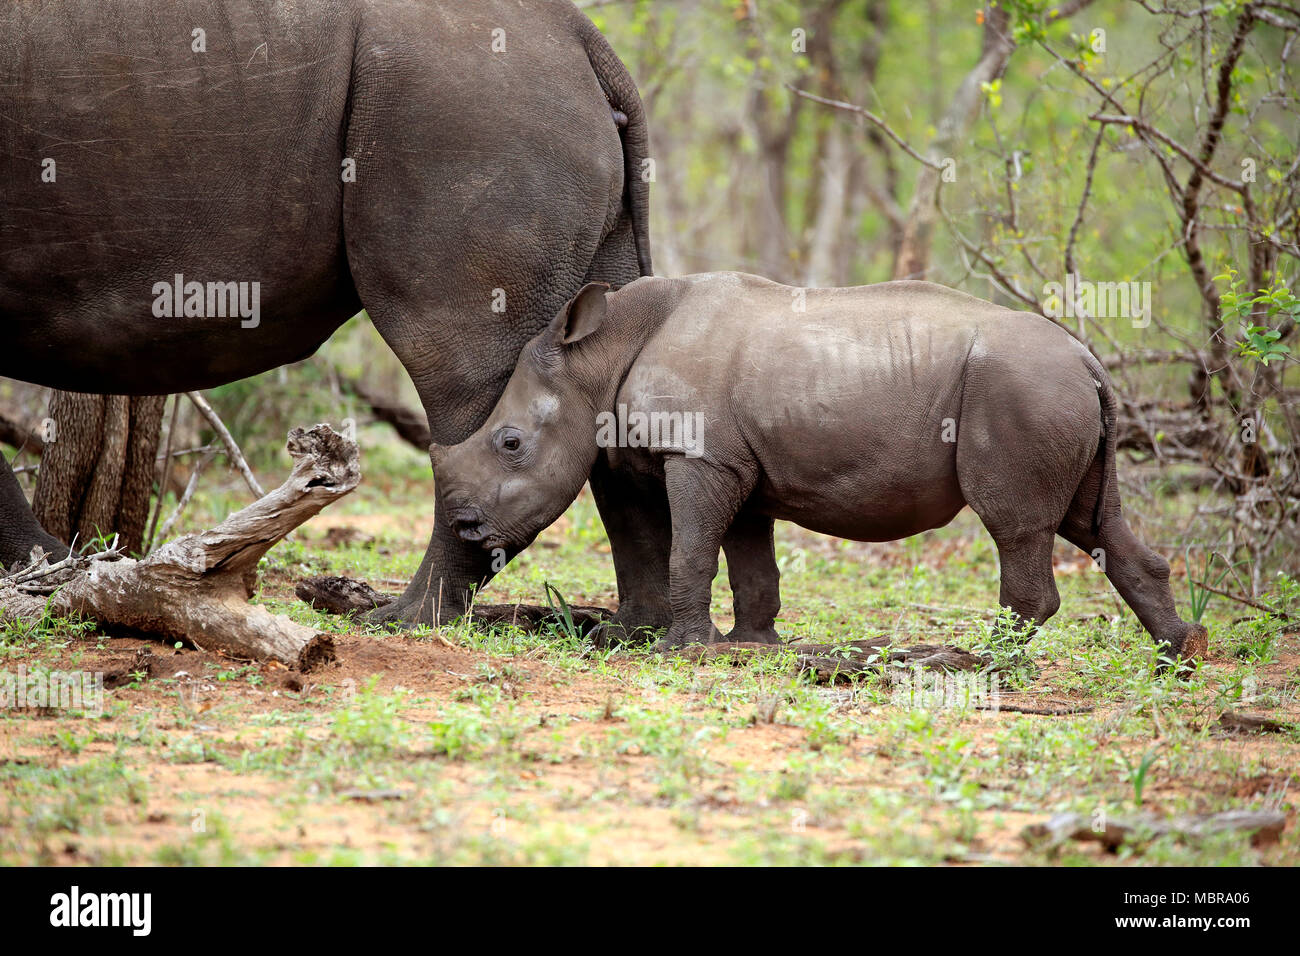 El rinoceronte blanco (Ceratotherium simum), joven animal inclinándose detrás de madre animal, comportamiento social, paquidermos Foto de stock